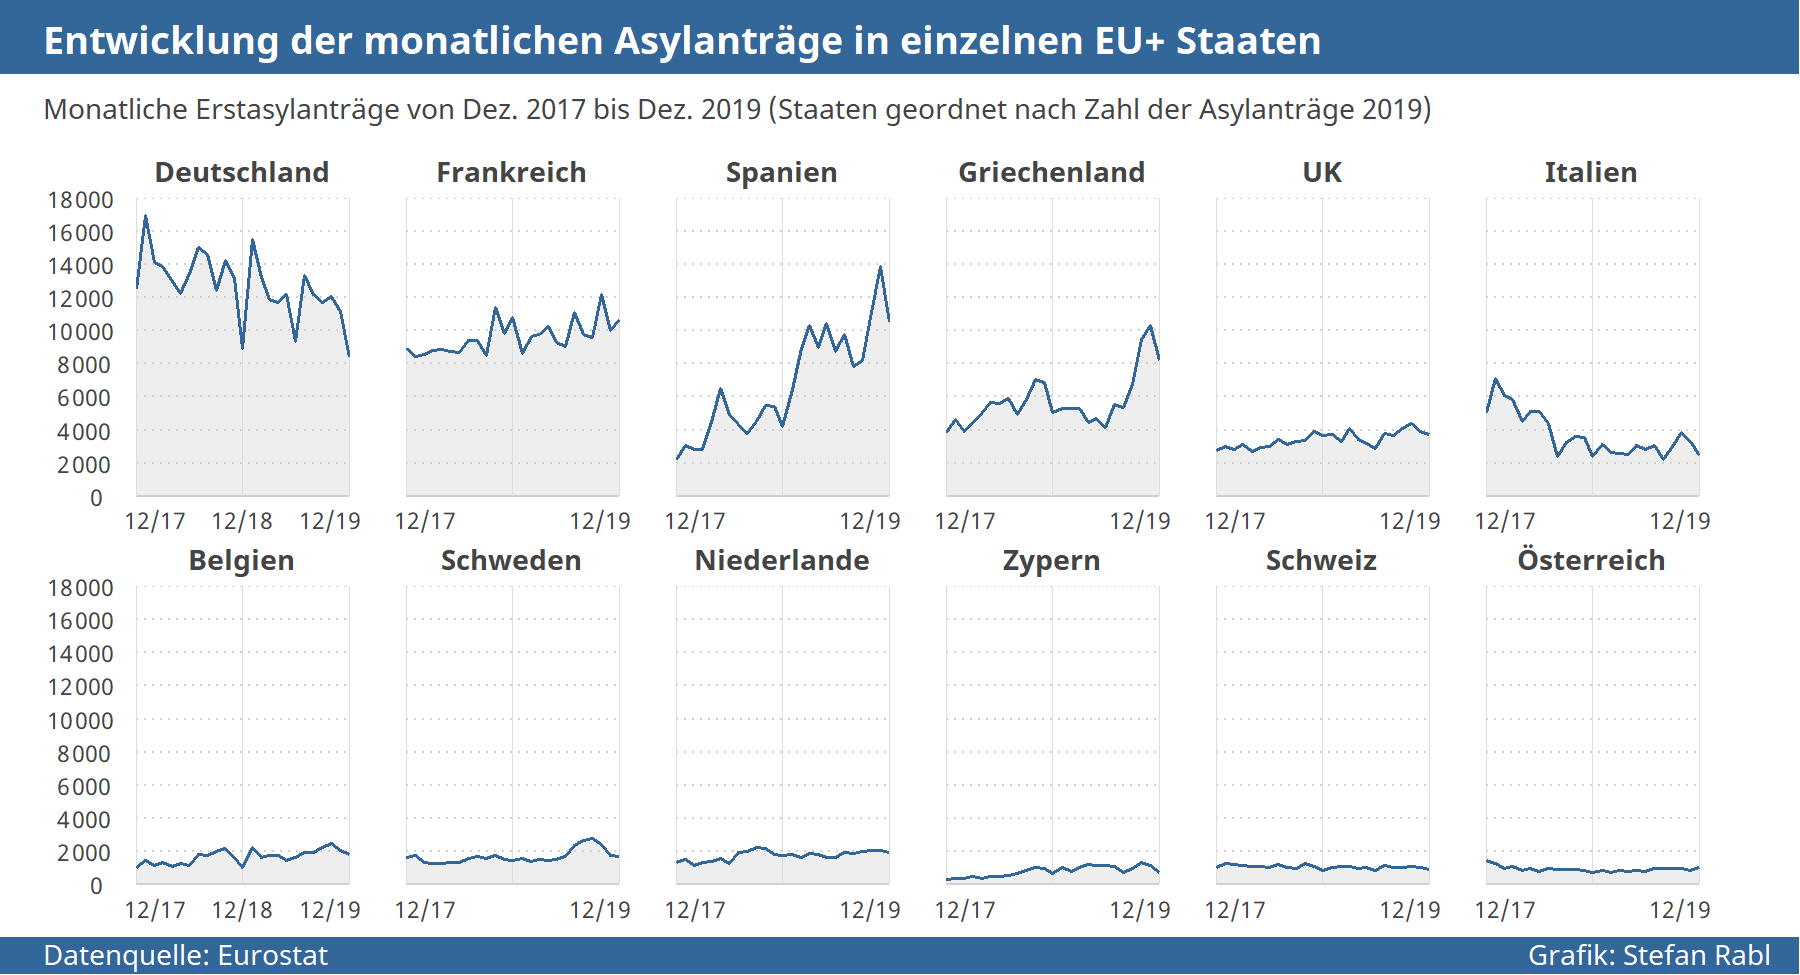 Grafik: Entwicklung der monatlichen Asylantragszahlen in einzelnen EU+ Staaten